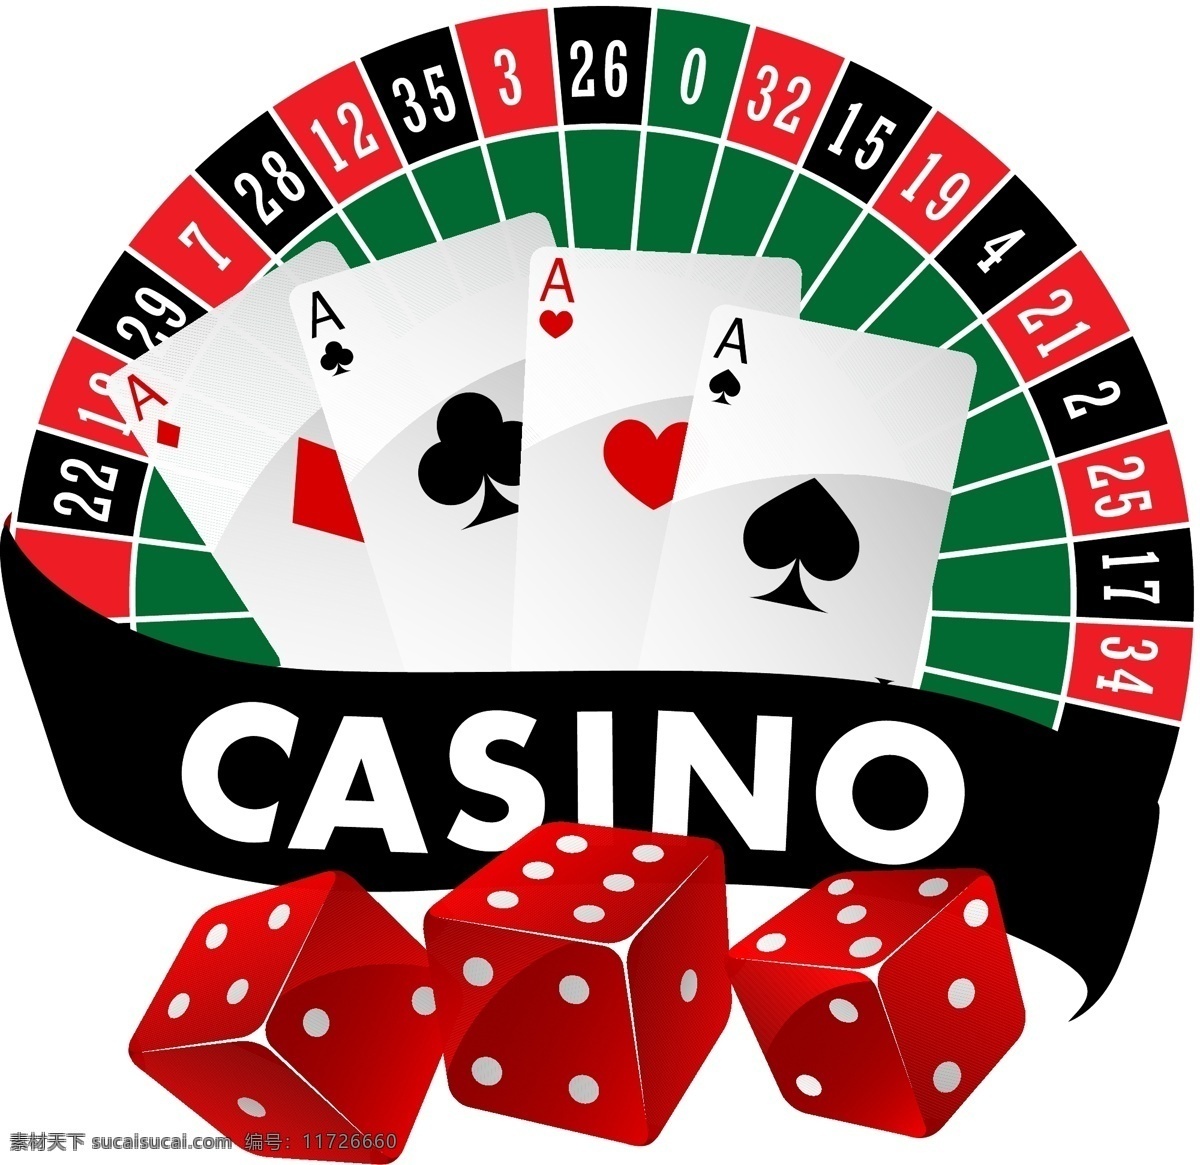 博彩 扑克 纸牌 赌博 赌场 骰子 色子 博彩工具 娱乐活动 休闲娱乐 矢量 生活百科